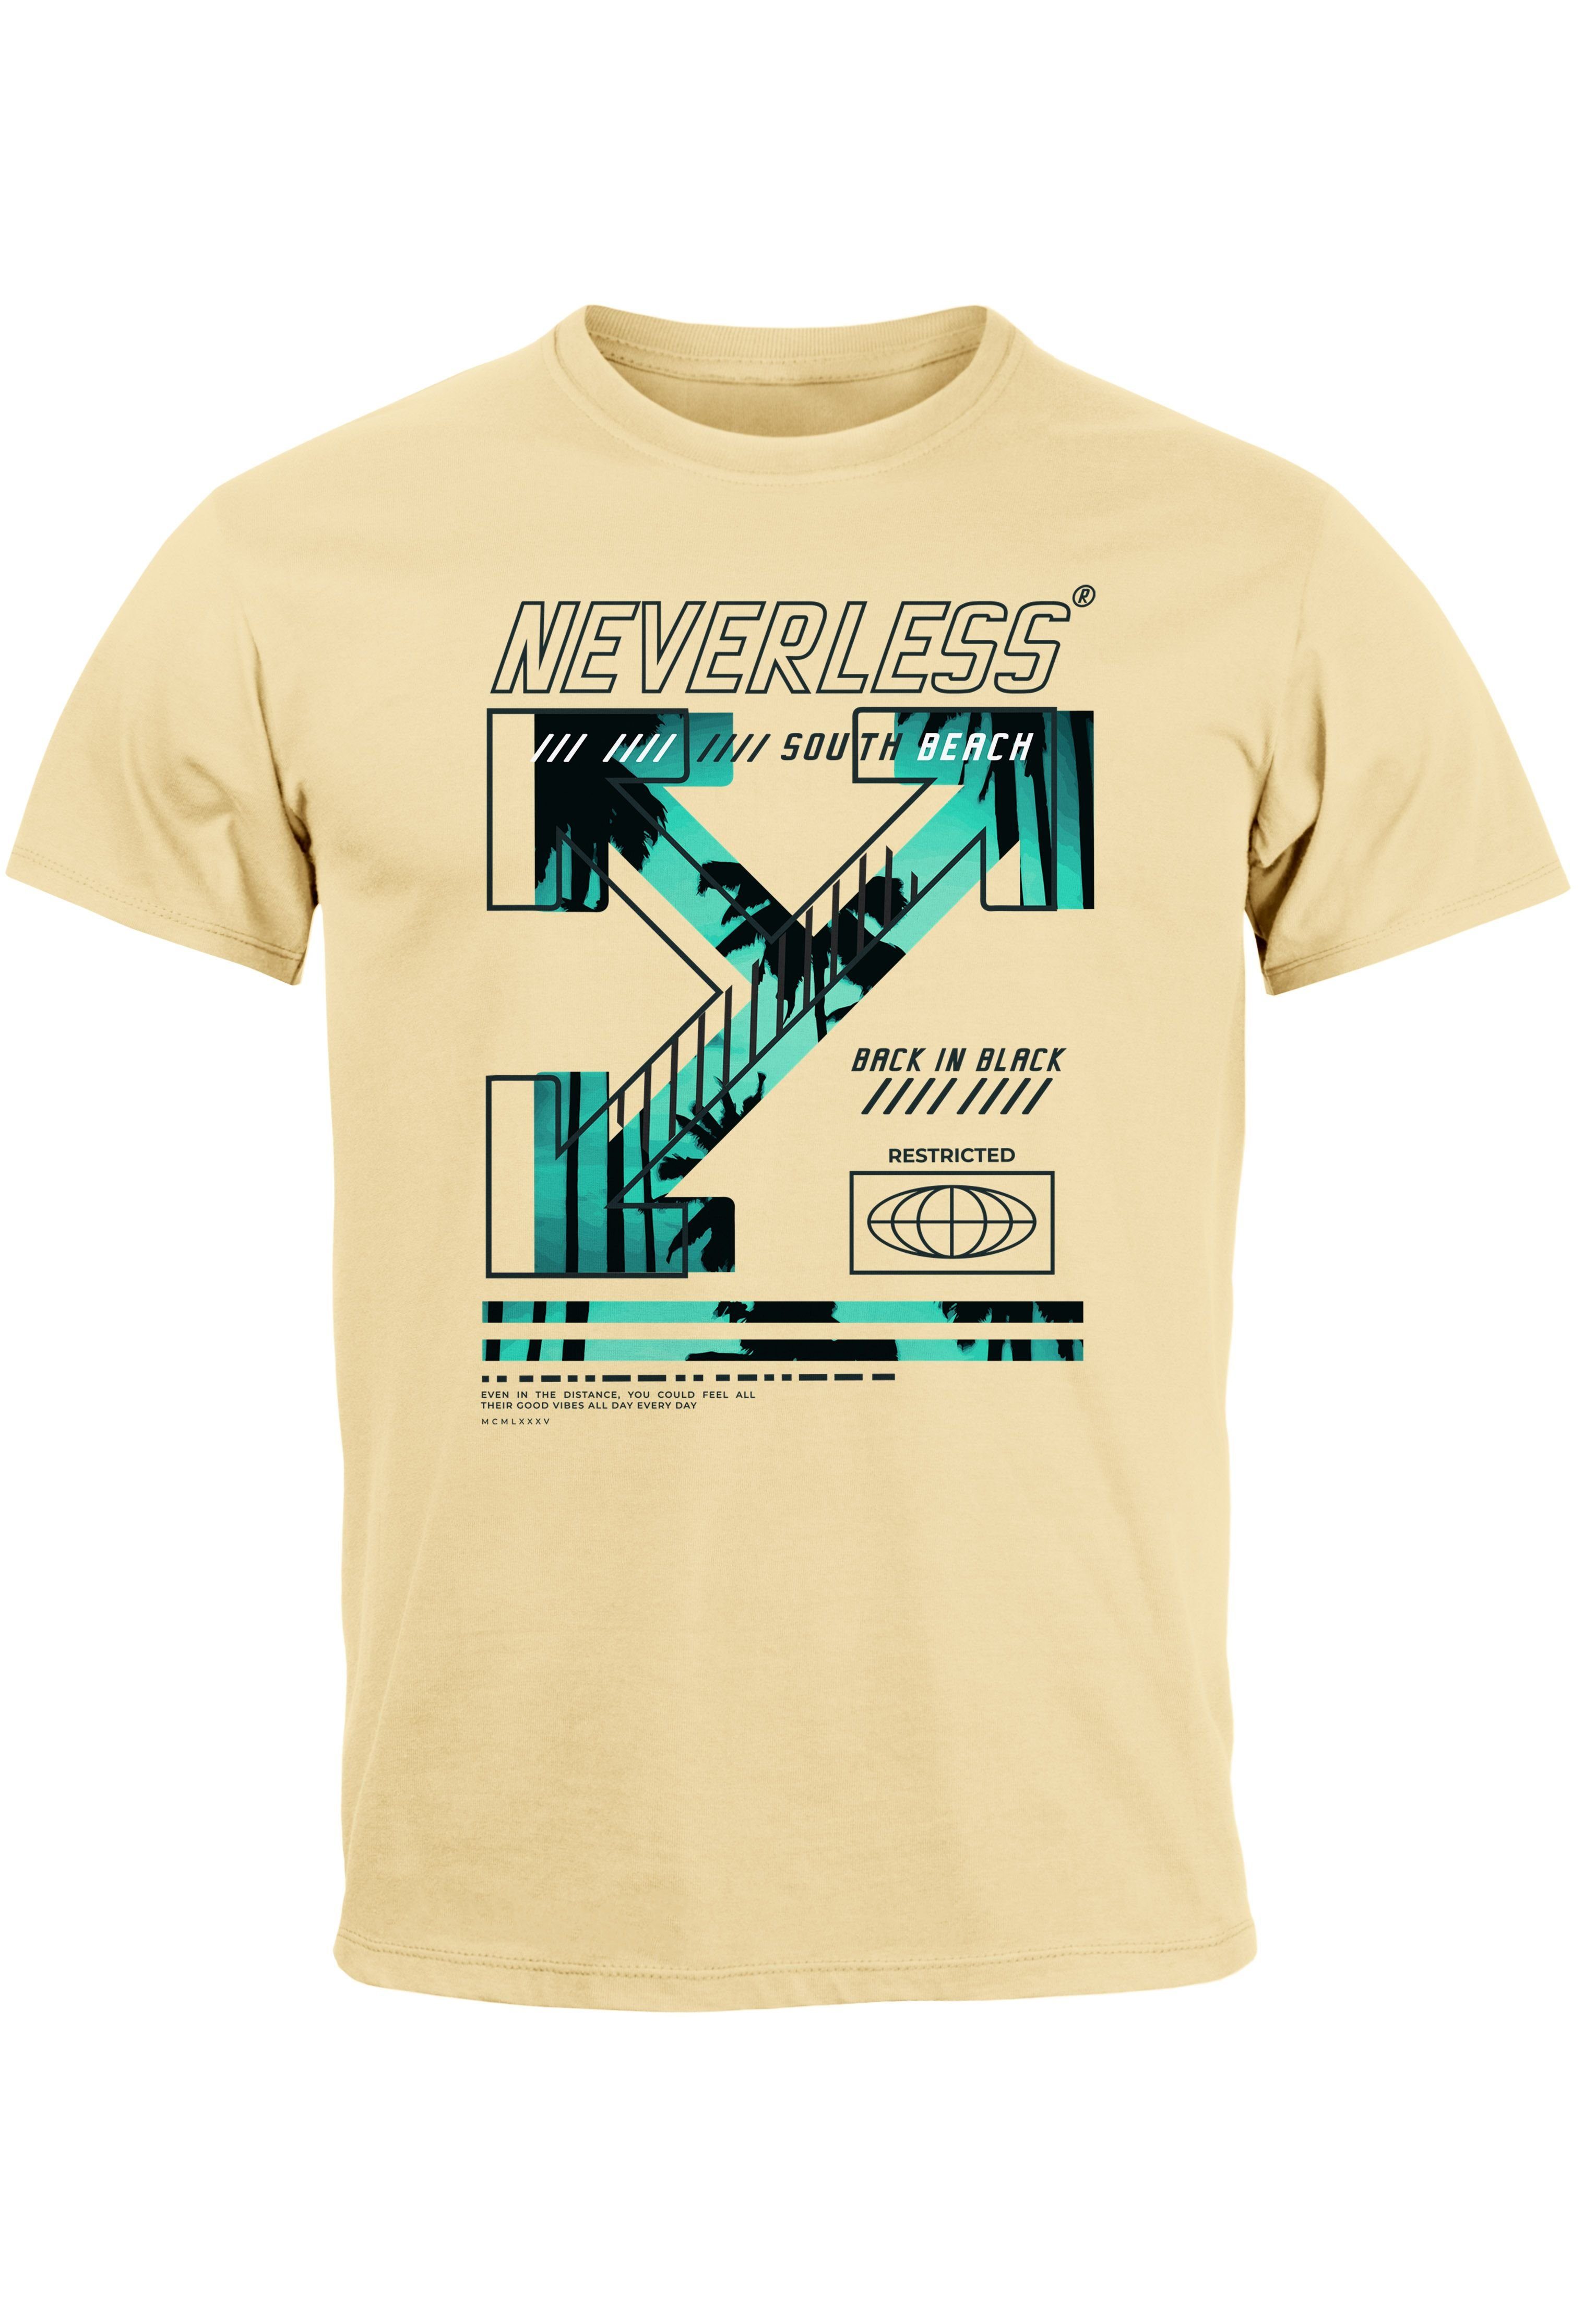 Neverless Print-Shirt Herren T-Shirt Text Print Aufdruck South Beach Techwear Fashion Street mit Print natur